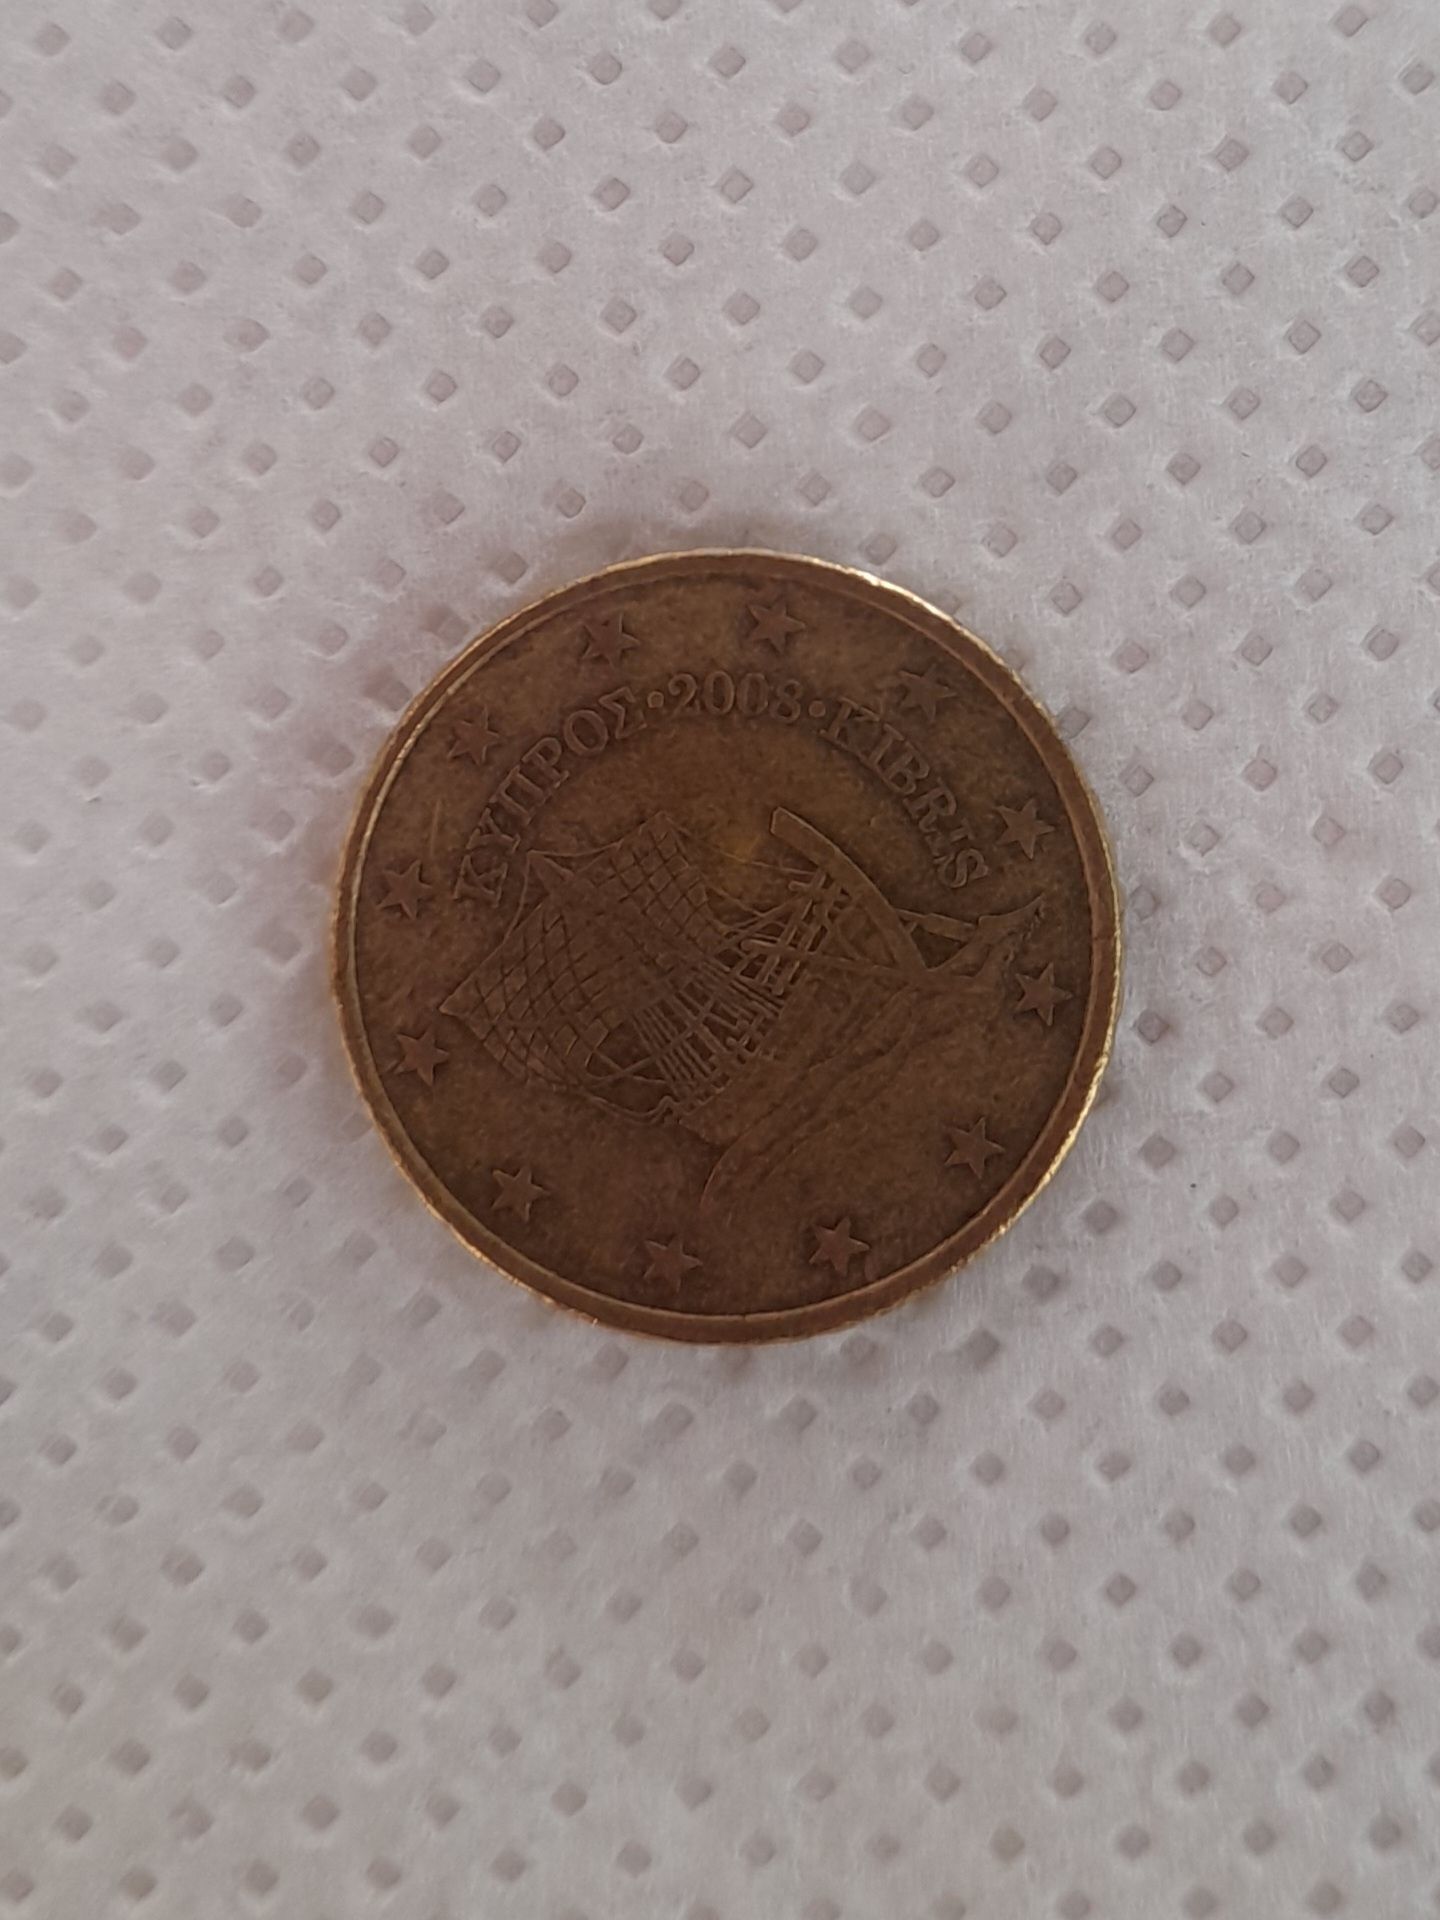 Monezi de 50 euro centi an 1999, 2001, 2002,2008